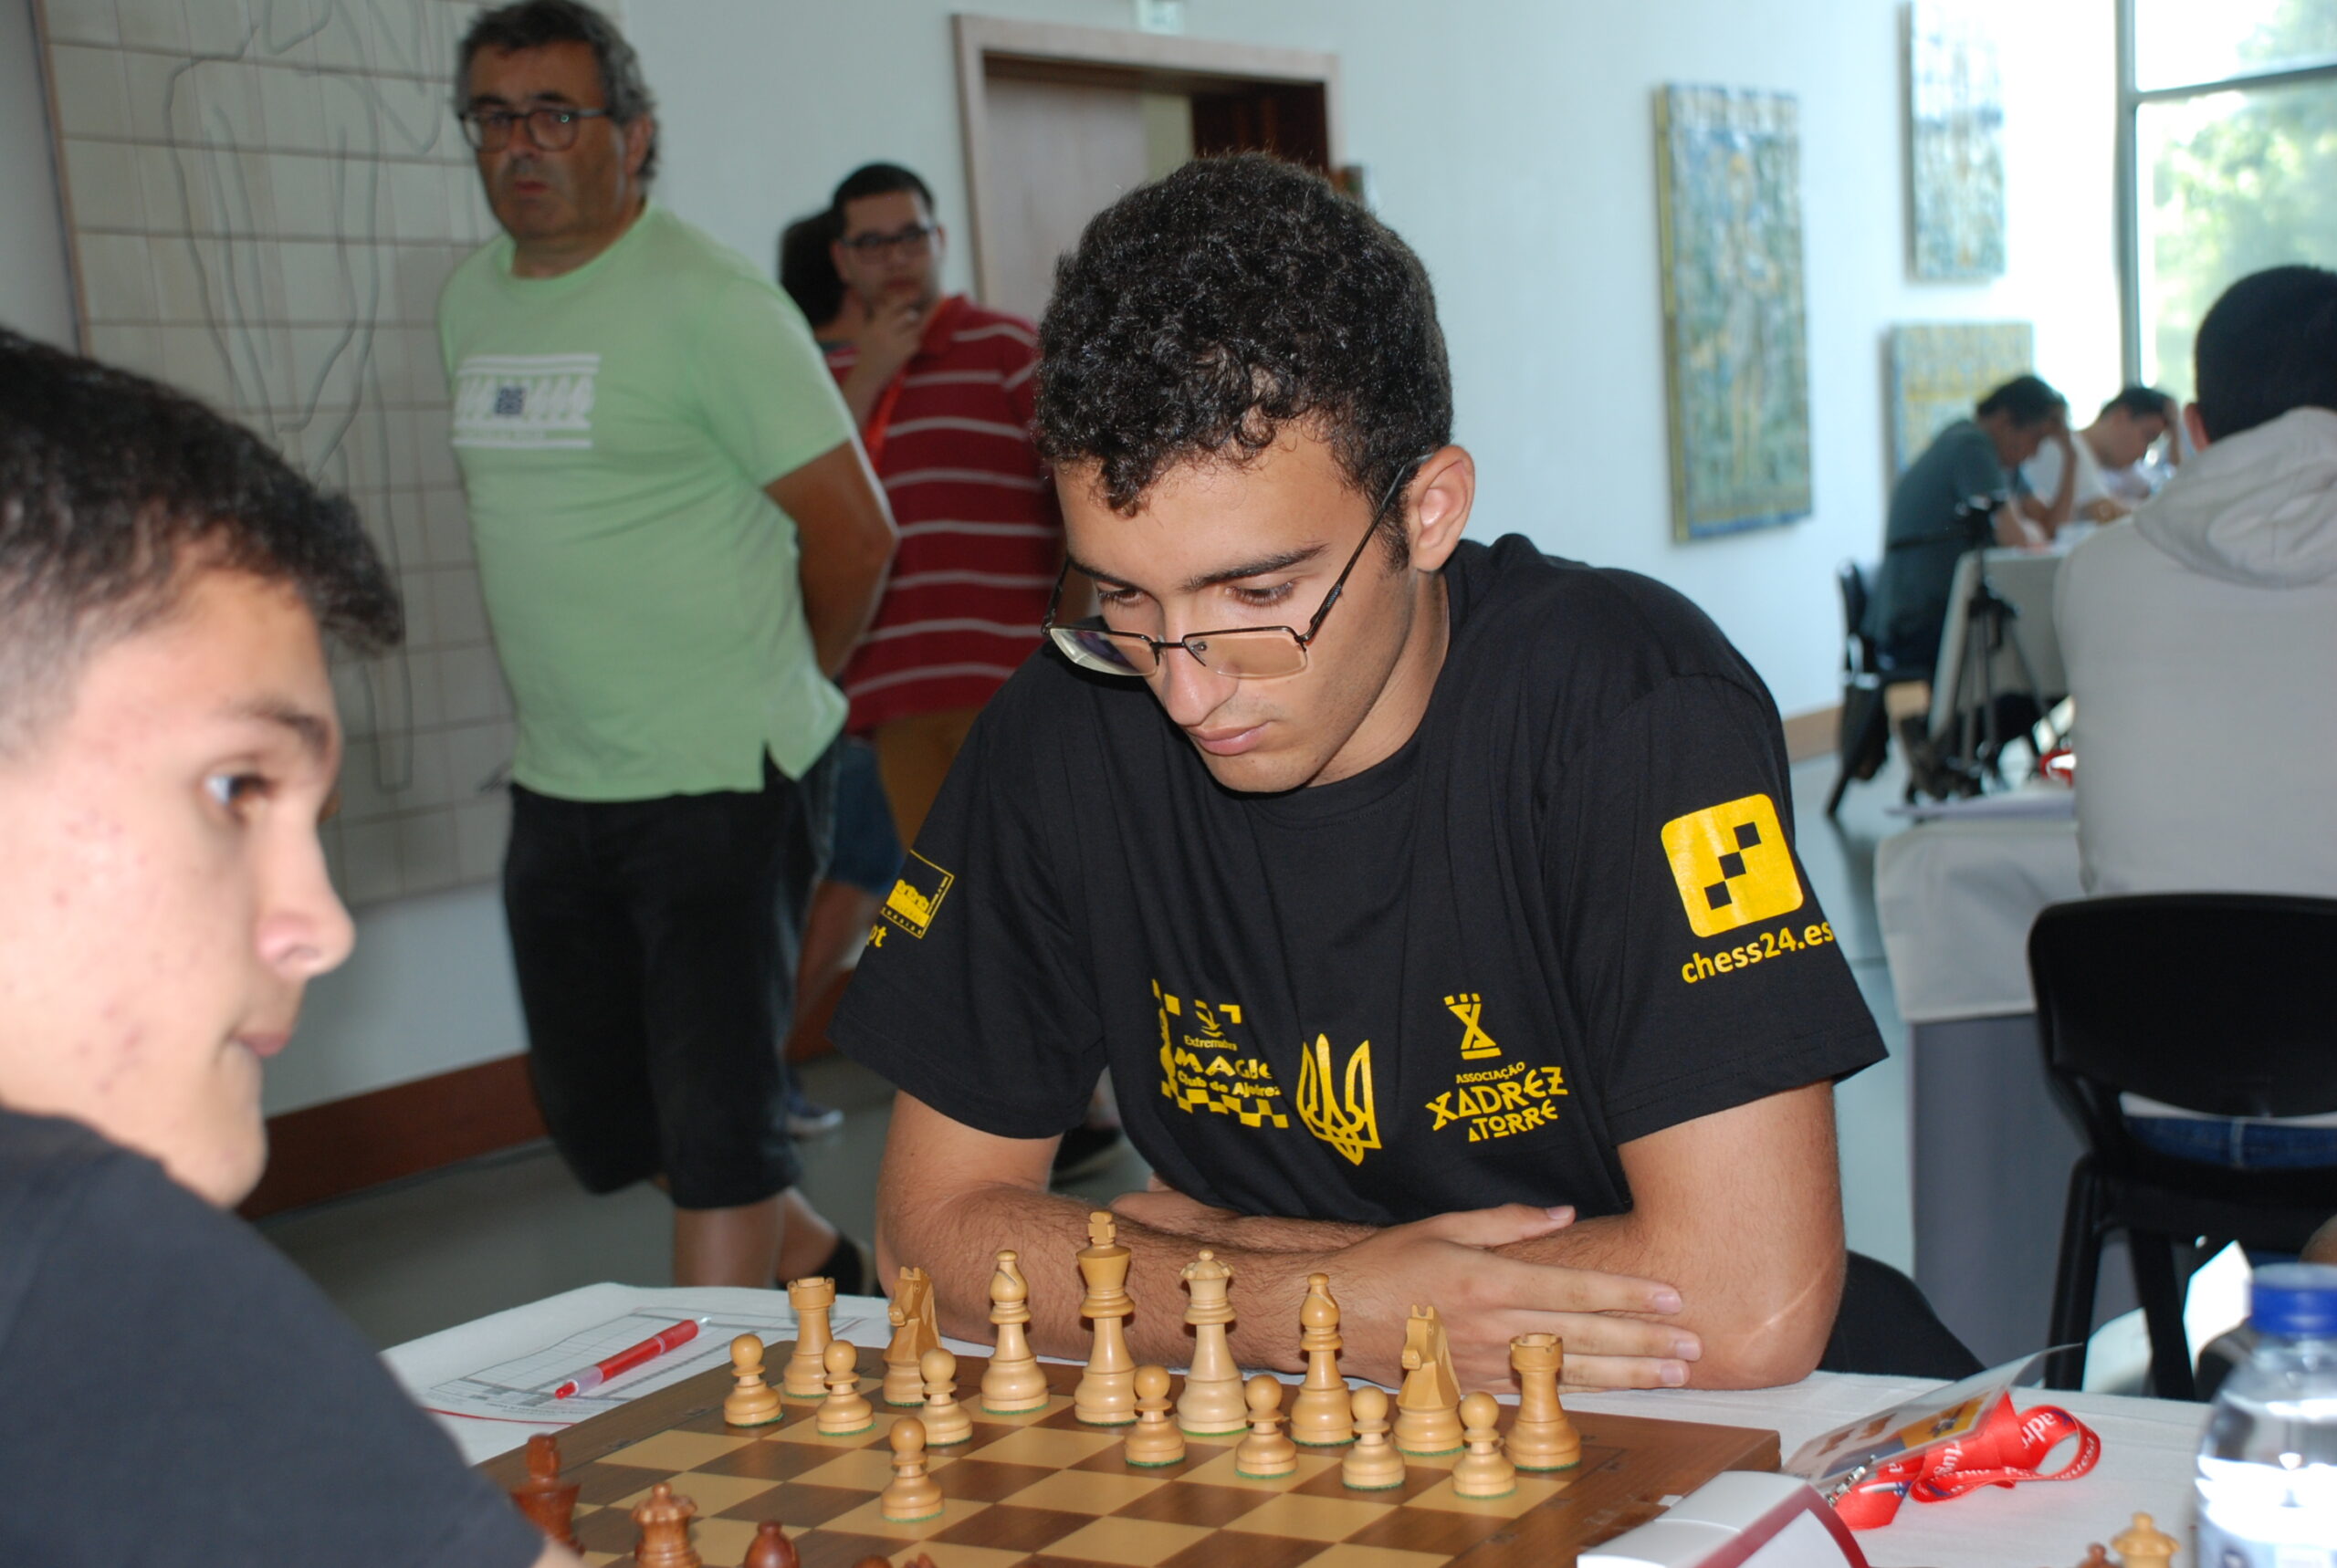 AXRAM - Associação de Xadrez da Madeira